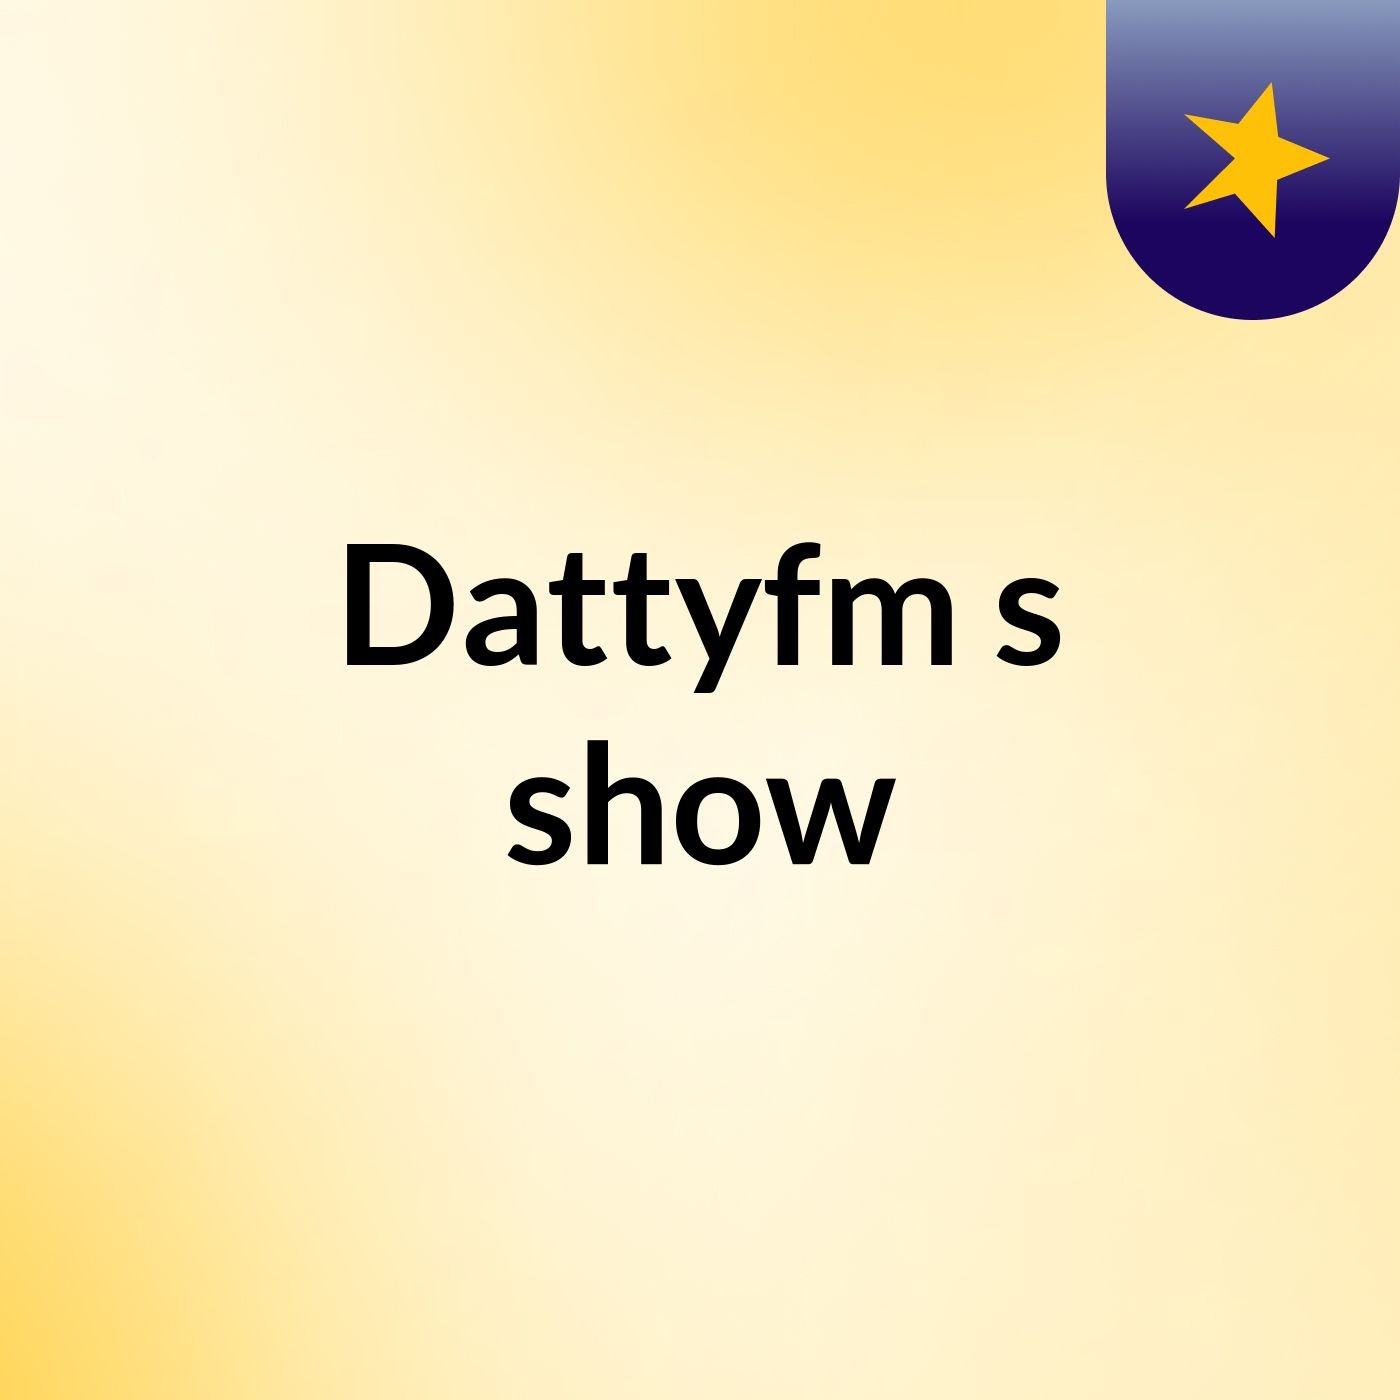 Dattyfm's show